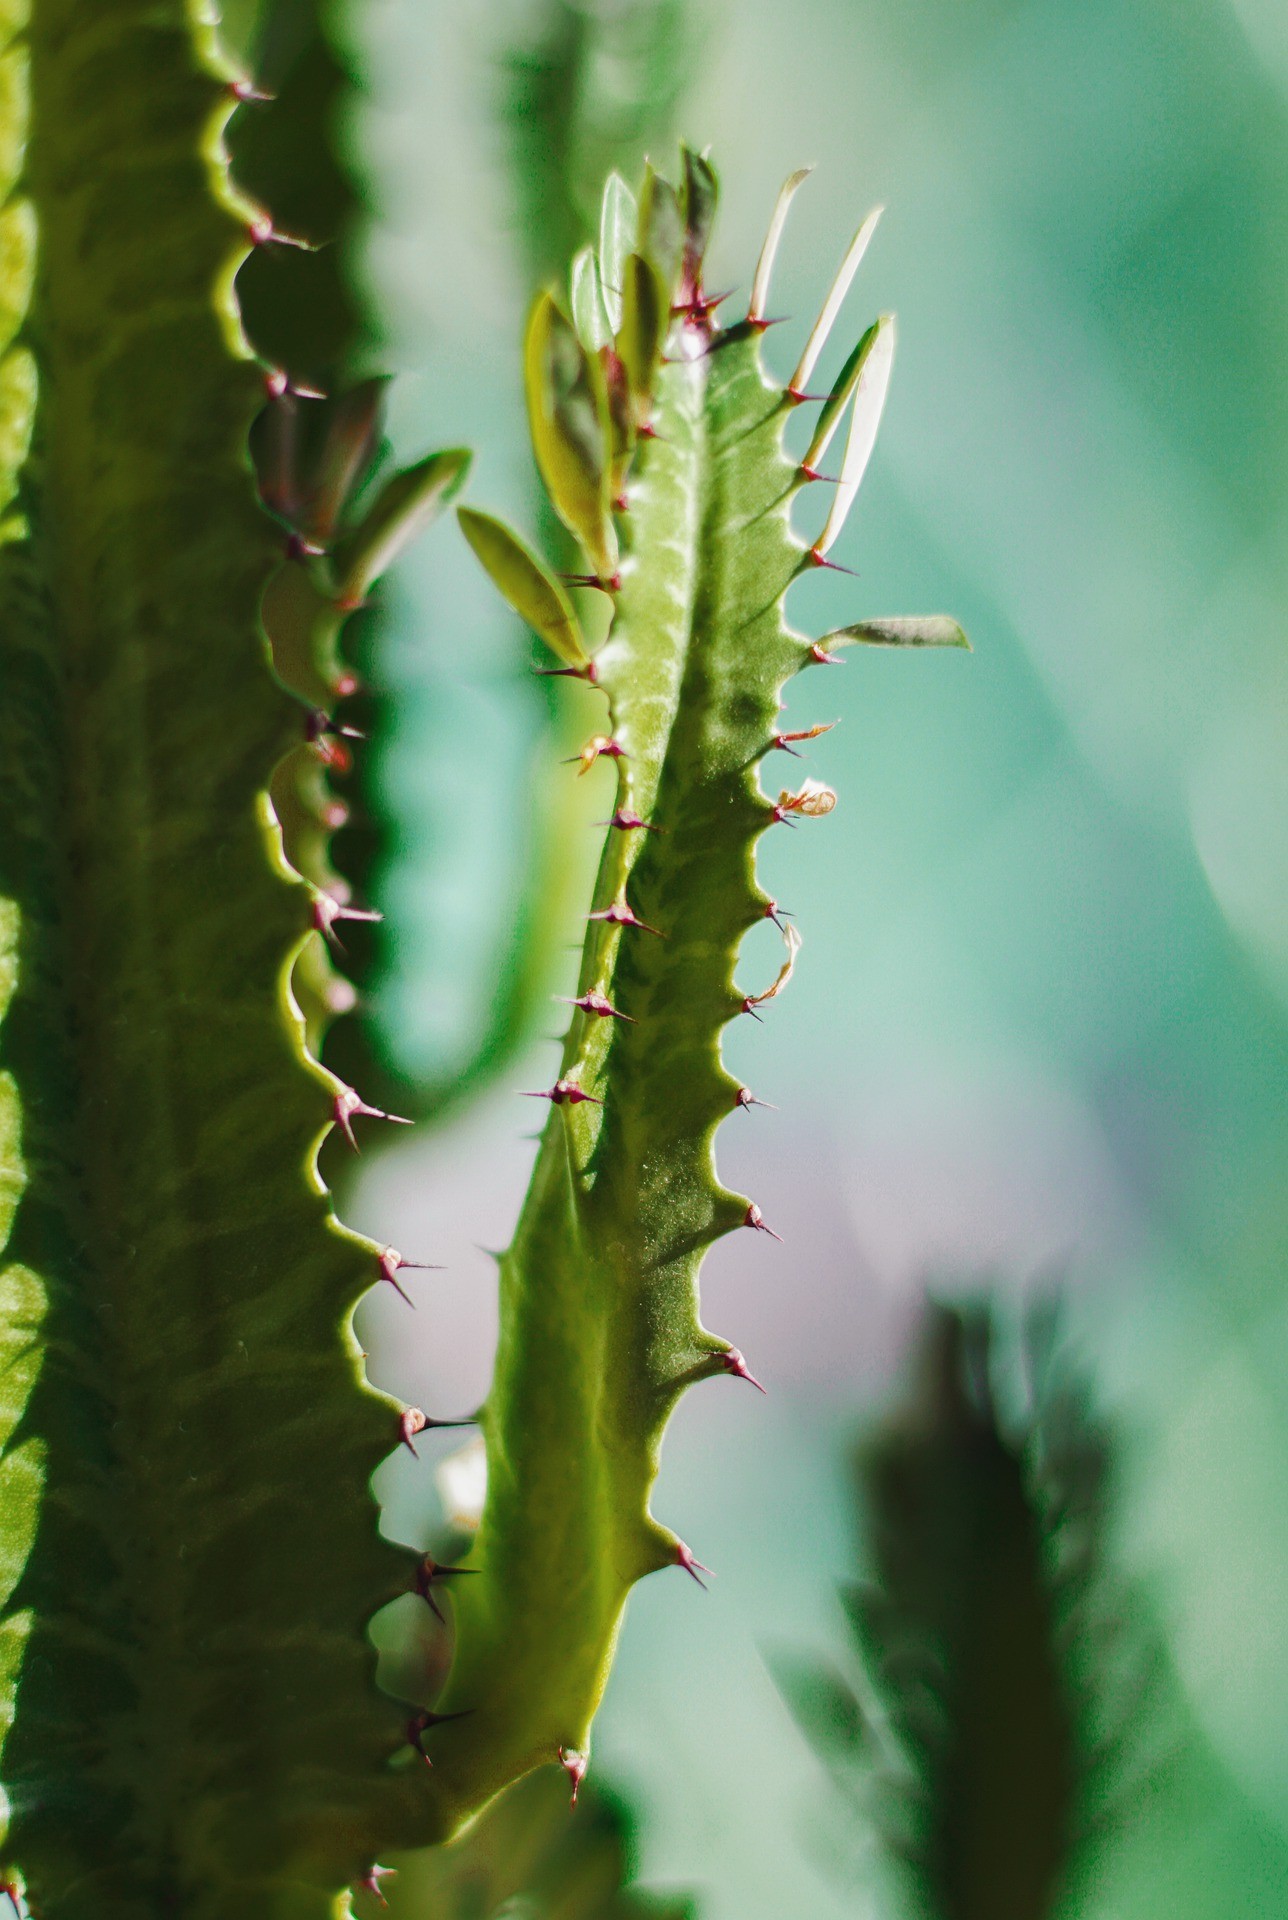 A hylocereus demora um ano para atingir a maioridade e começar a dar frutos (Foto: Pixabay / Zgjky / CreativeCommons)